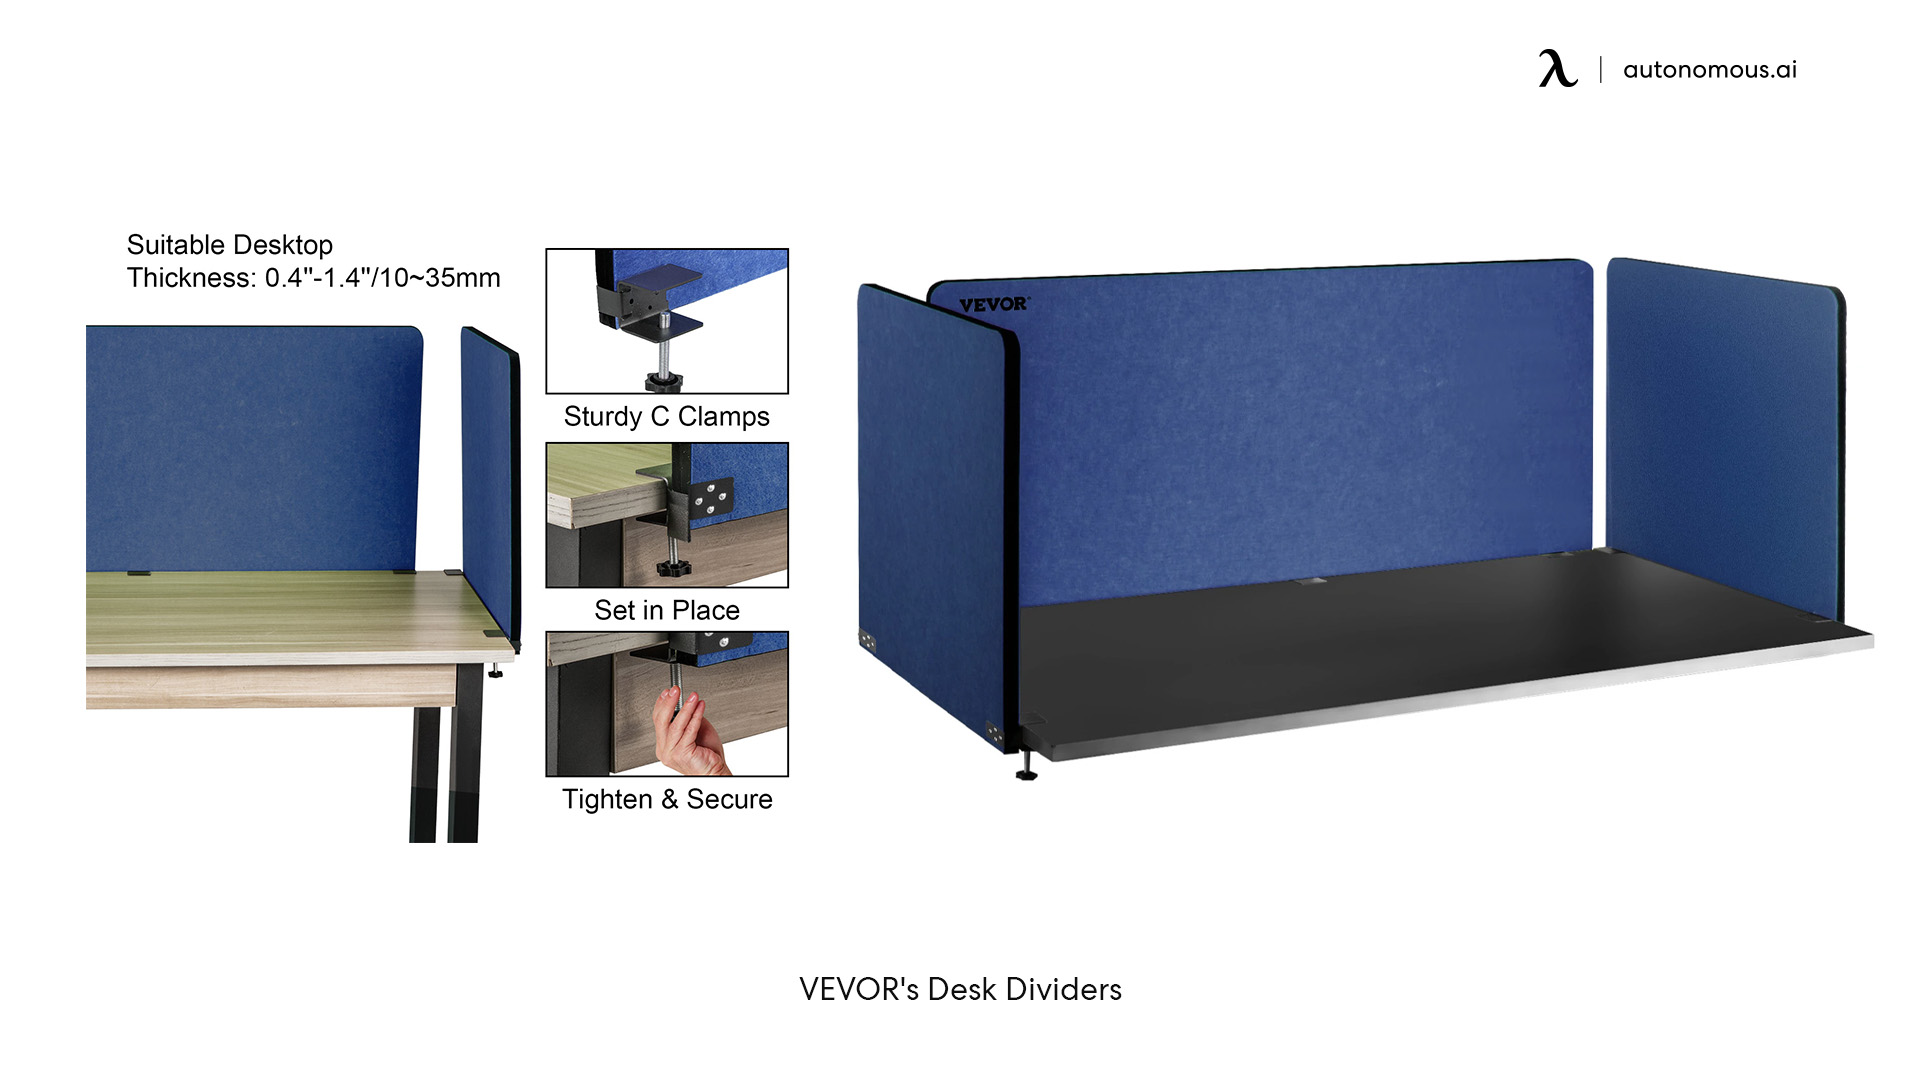 VEVOR's Desk Dividers